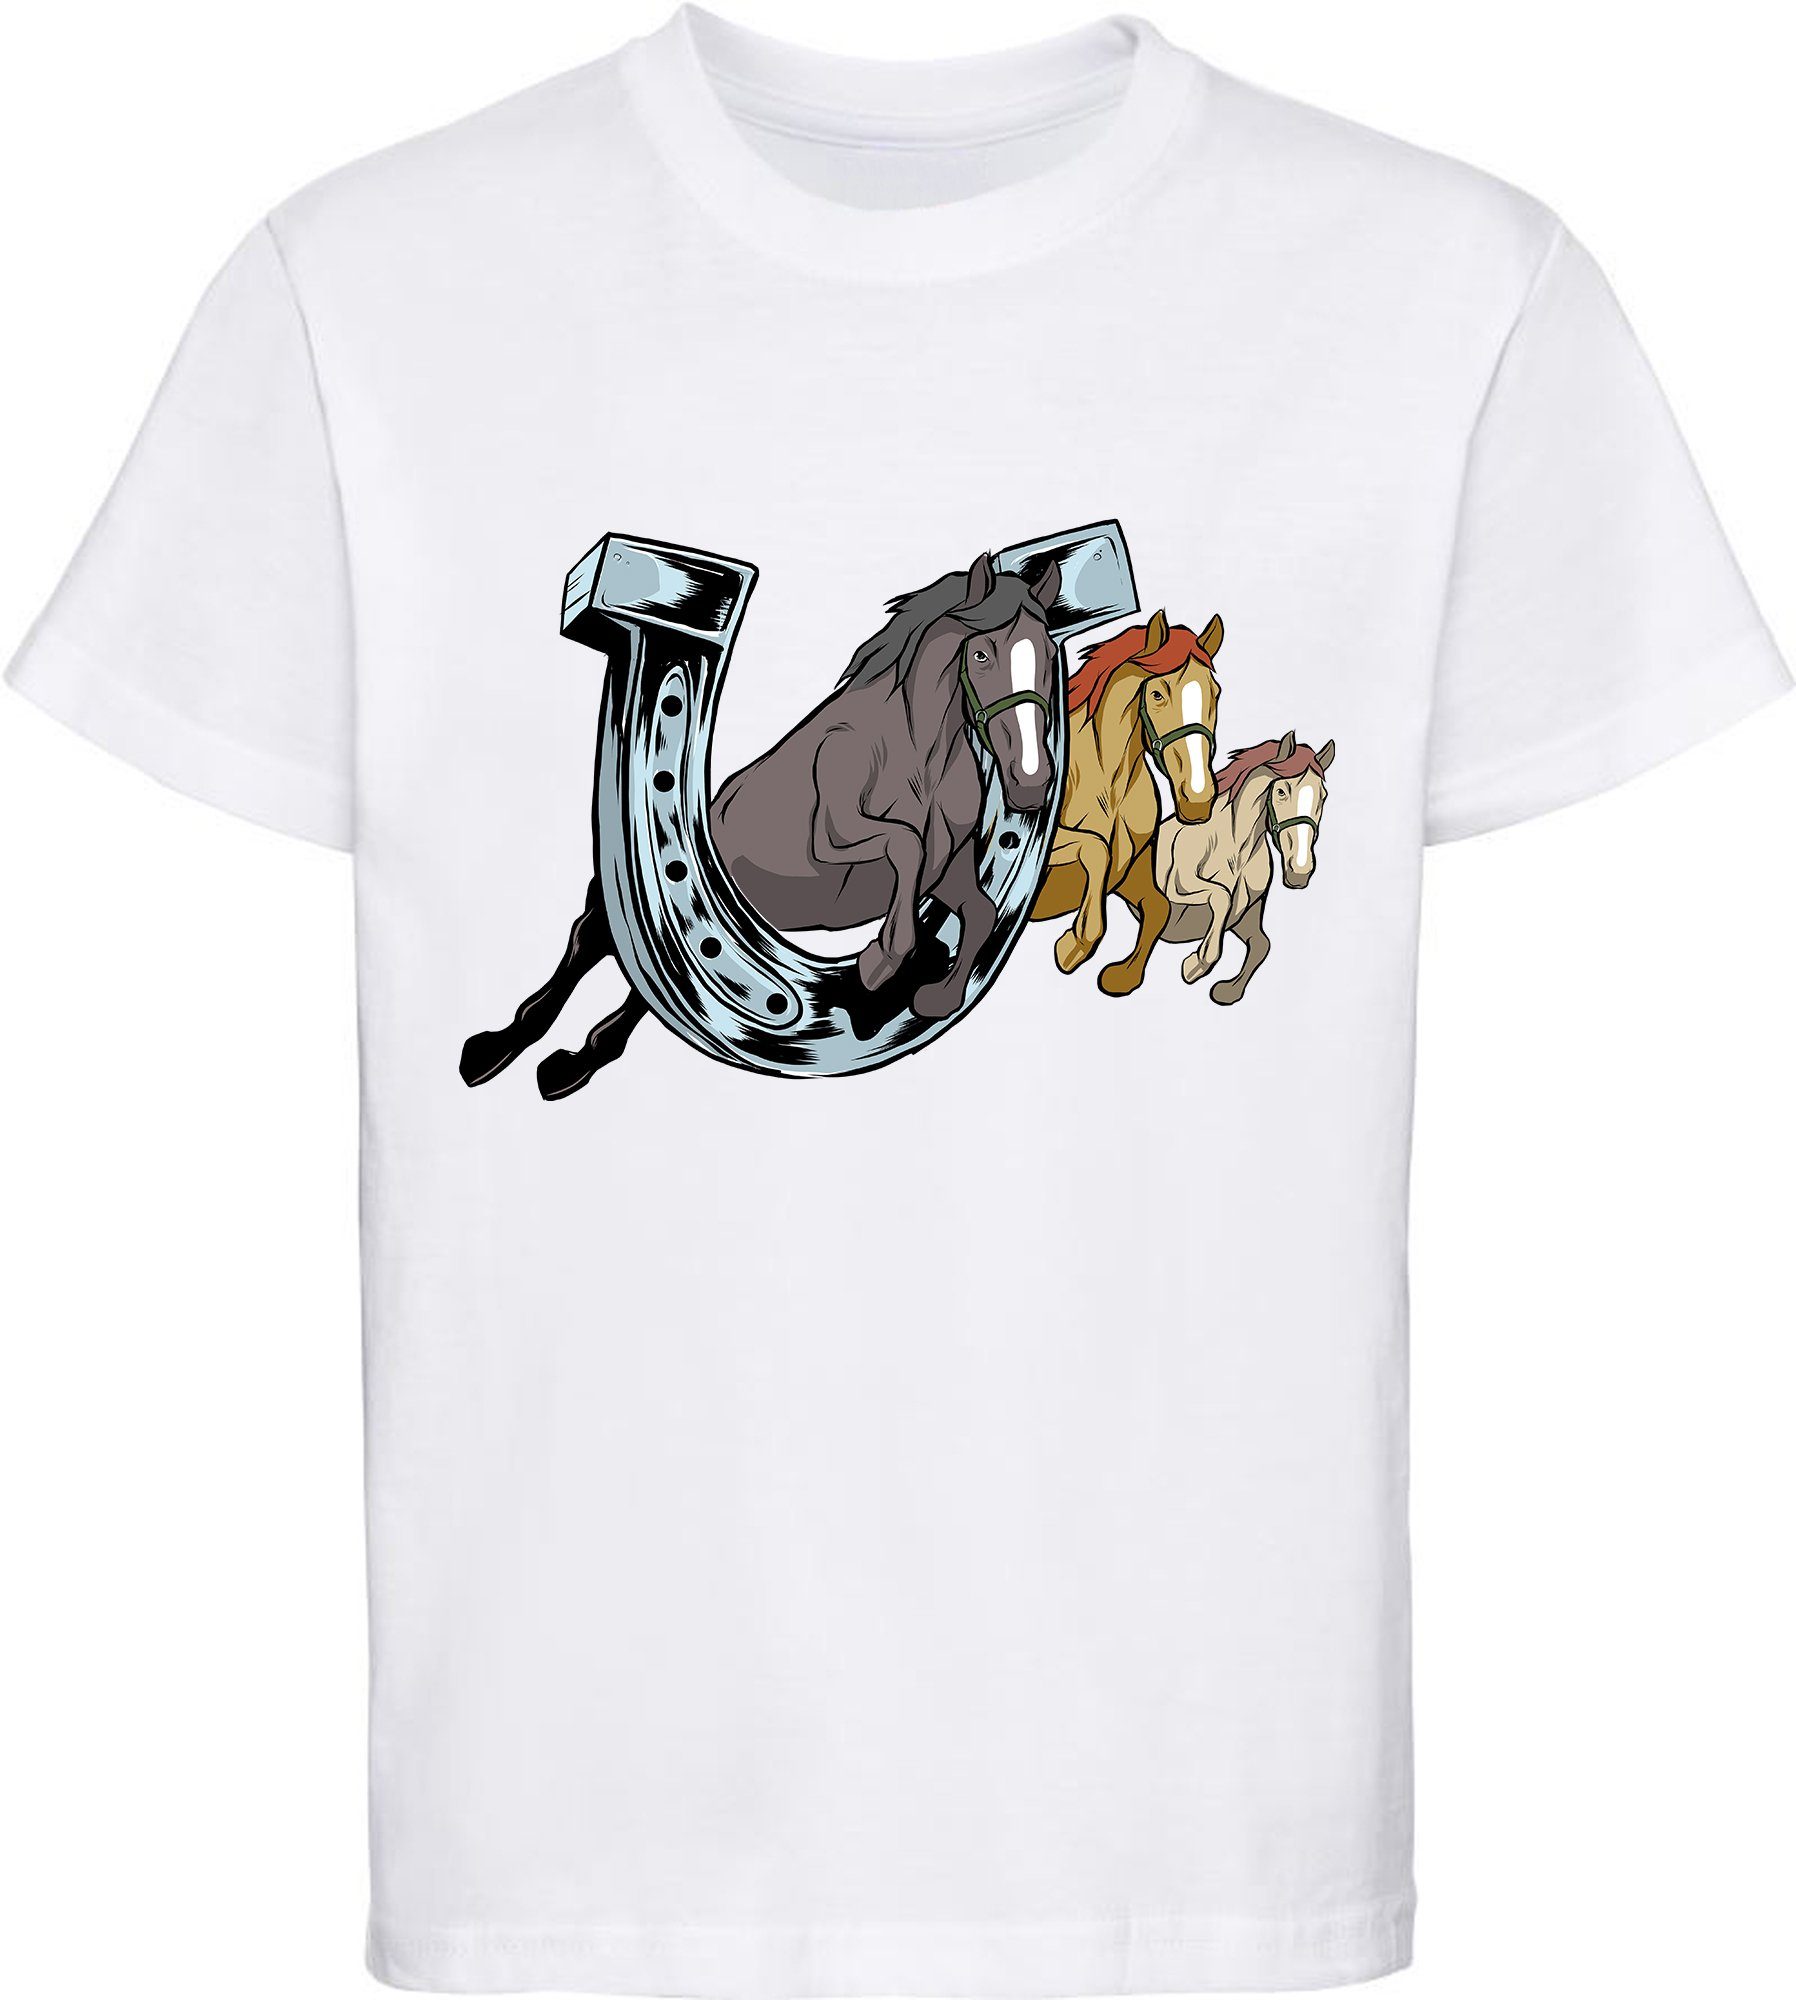 MyDesign24 Print-Shirt Hufeisen Mädchen bedrucktes drei T-Shirt Pferde durch ein springende Aufdruck, weiss mit Baumwollshirt i145